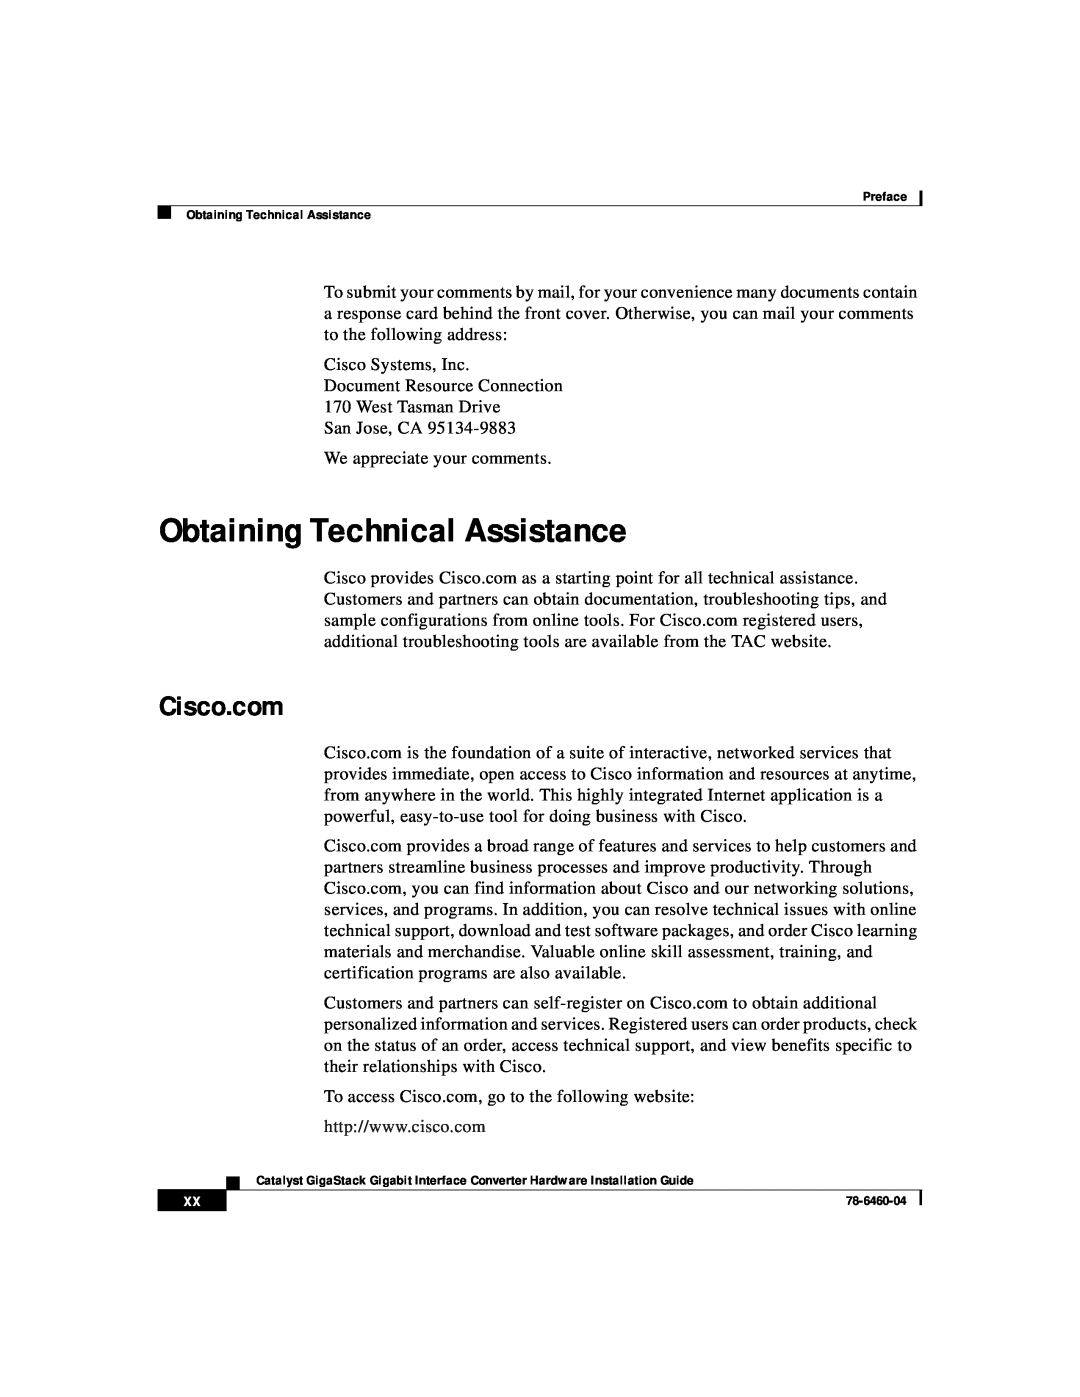 Cisco Systems WS-X3500-XL manual Obtaining Technical Assistance, Cisco.com 